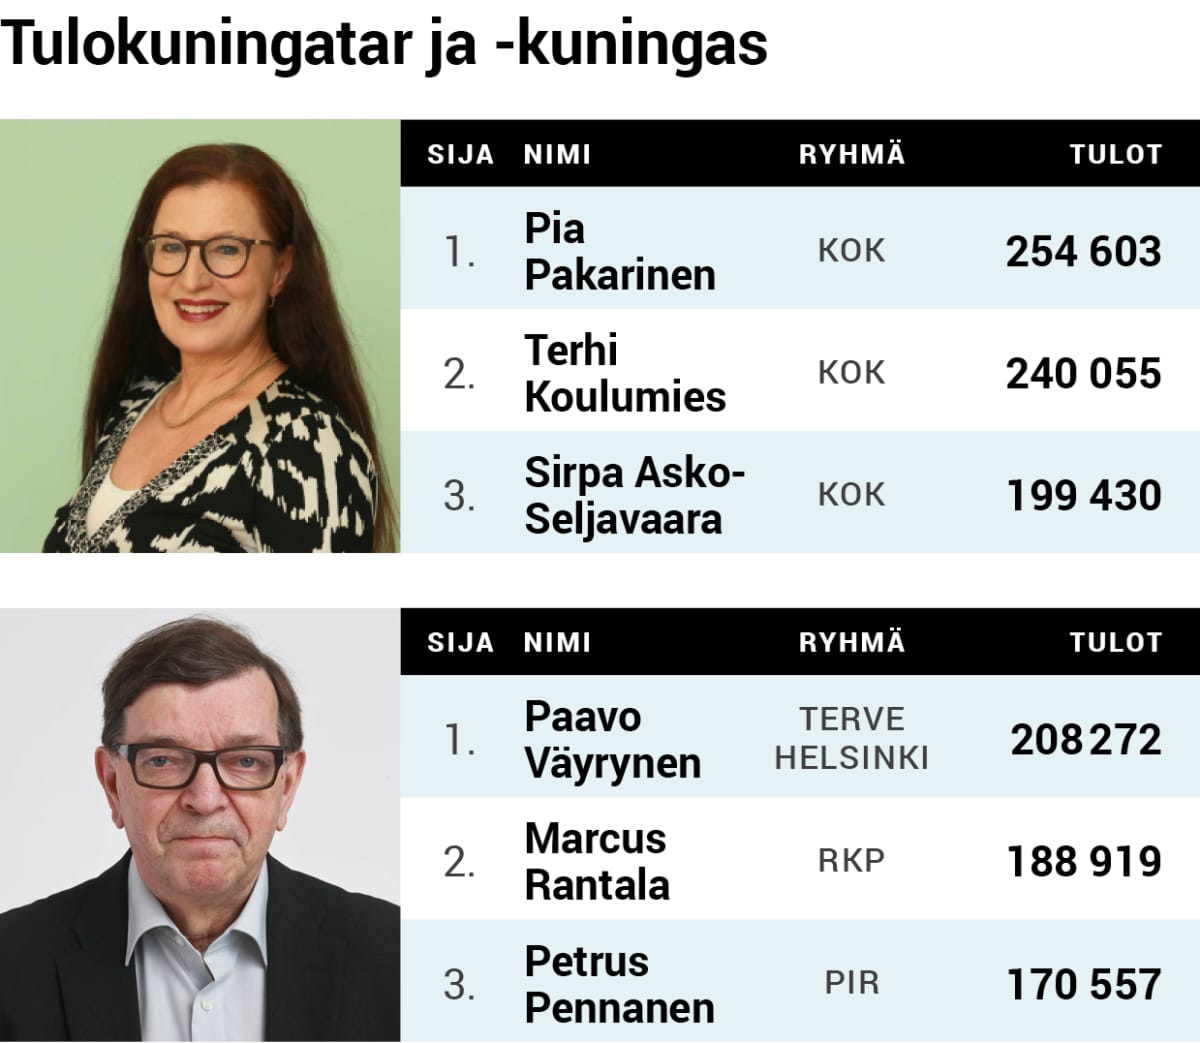 Helsingin kaupunginvaltuuston tulokuningatar Pia Pakarinen ja tulokuningas Paavo Väyrynen.